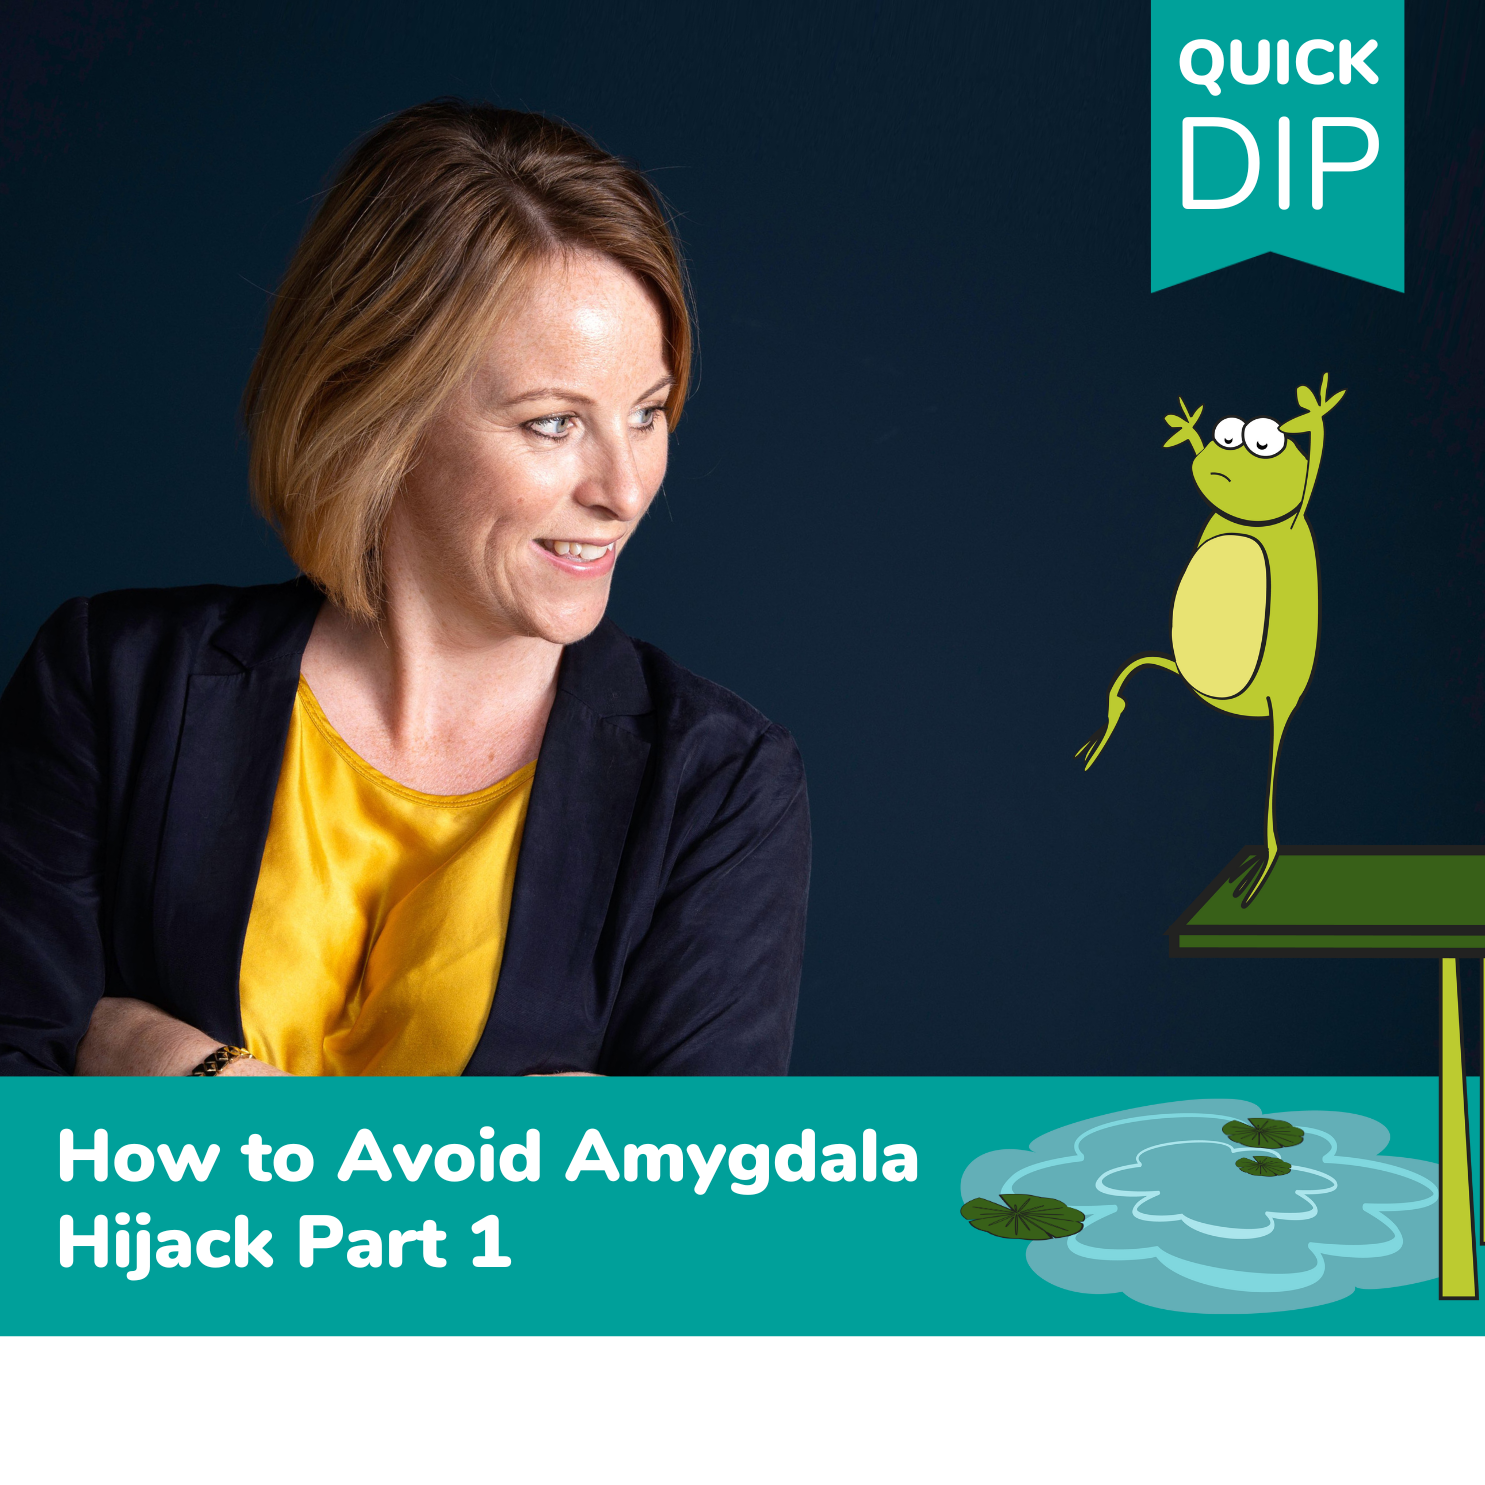 How to Avoid Amygdala Hijack Part 1